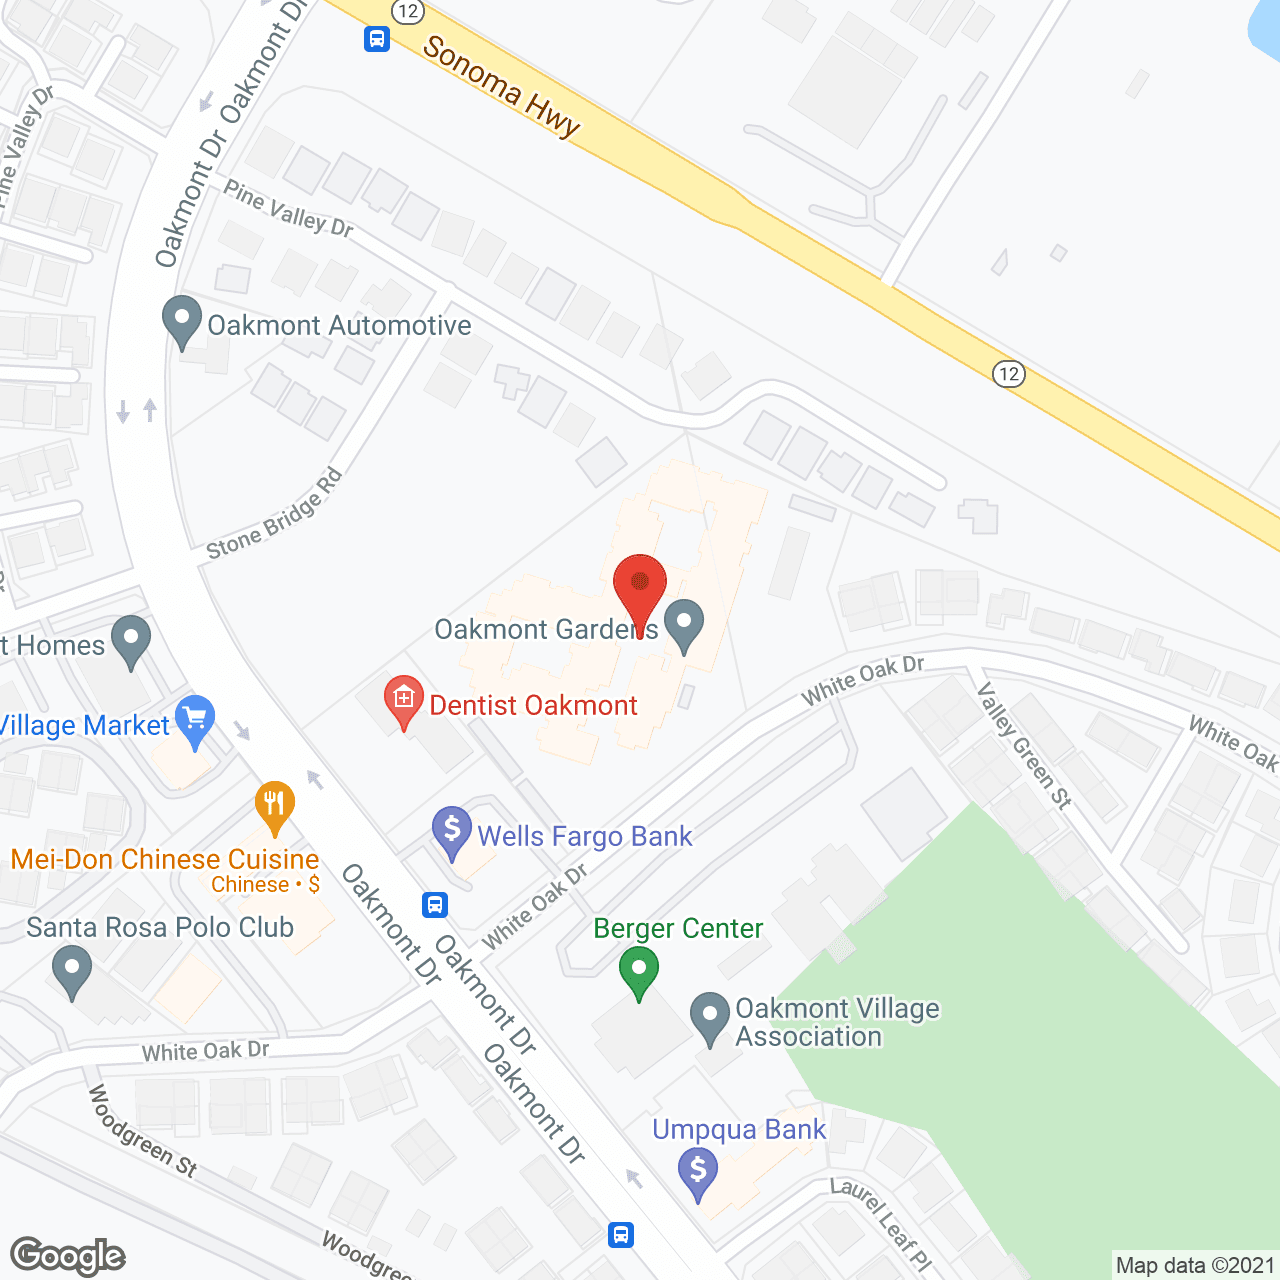 Oakmont Gardens in google map